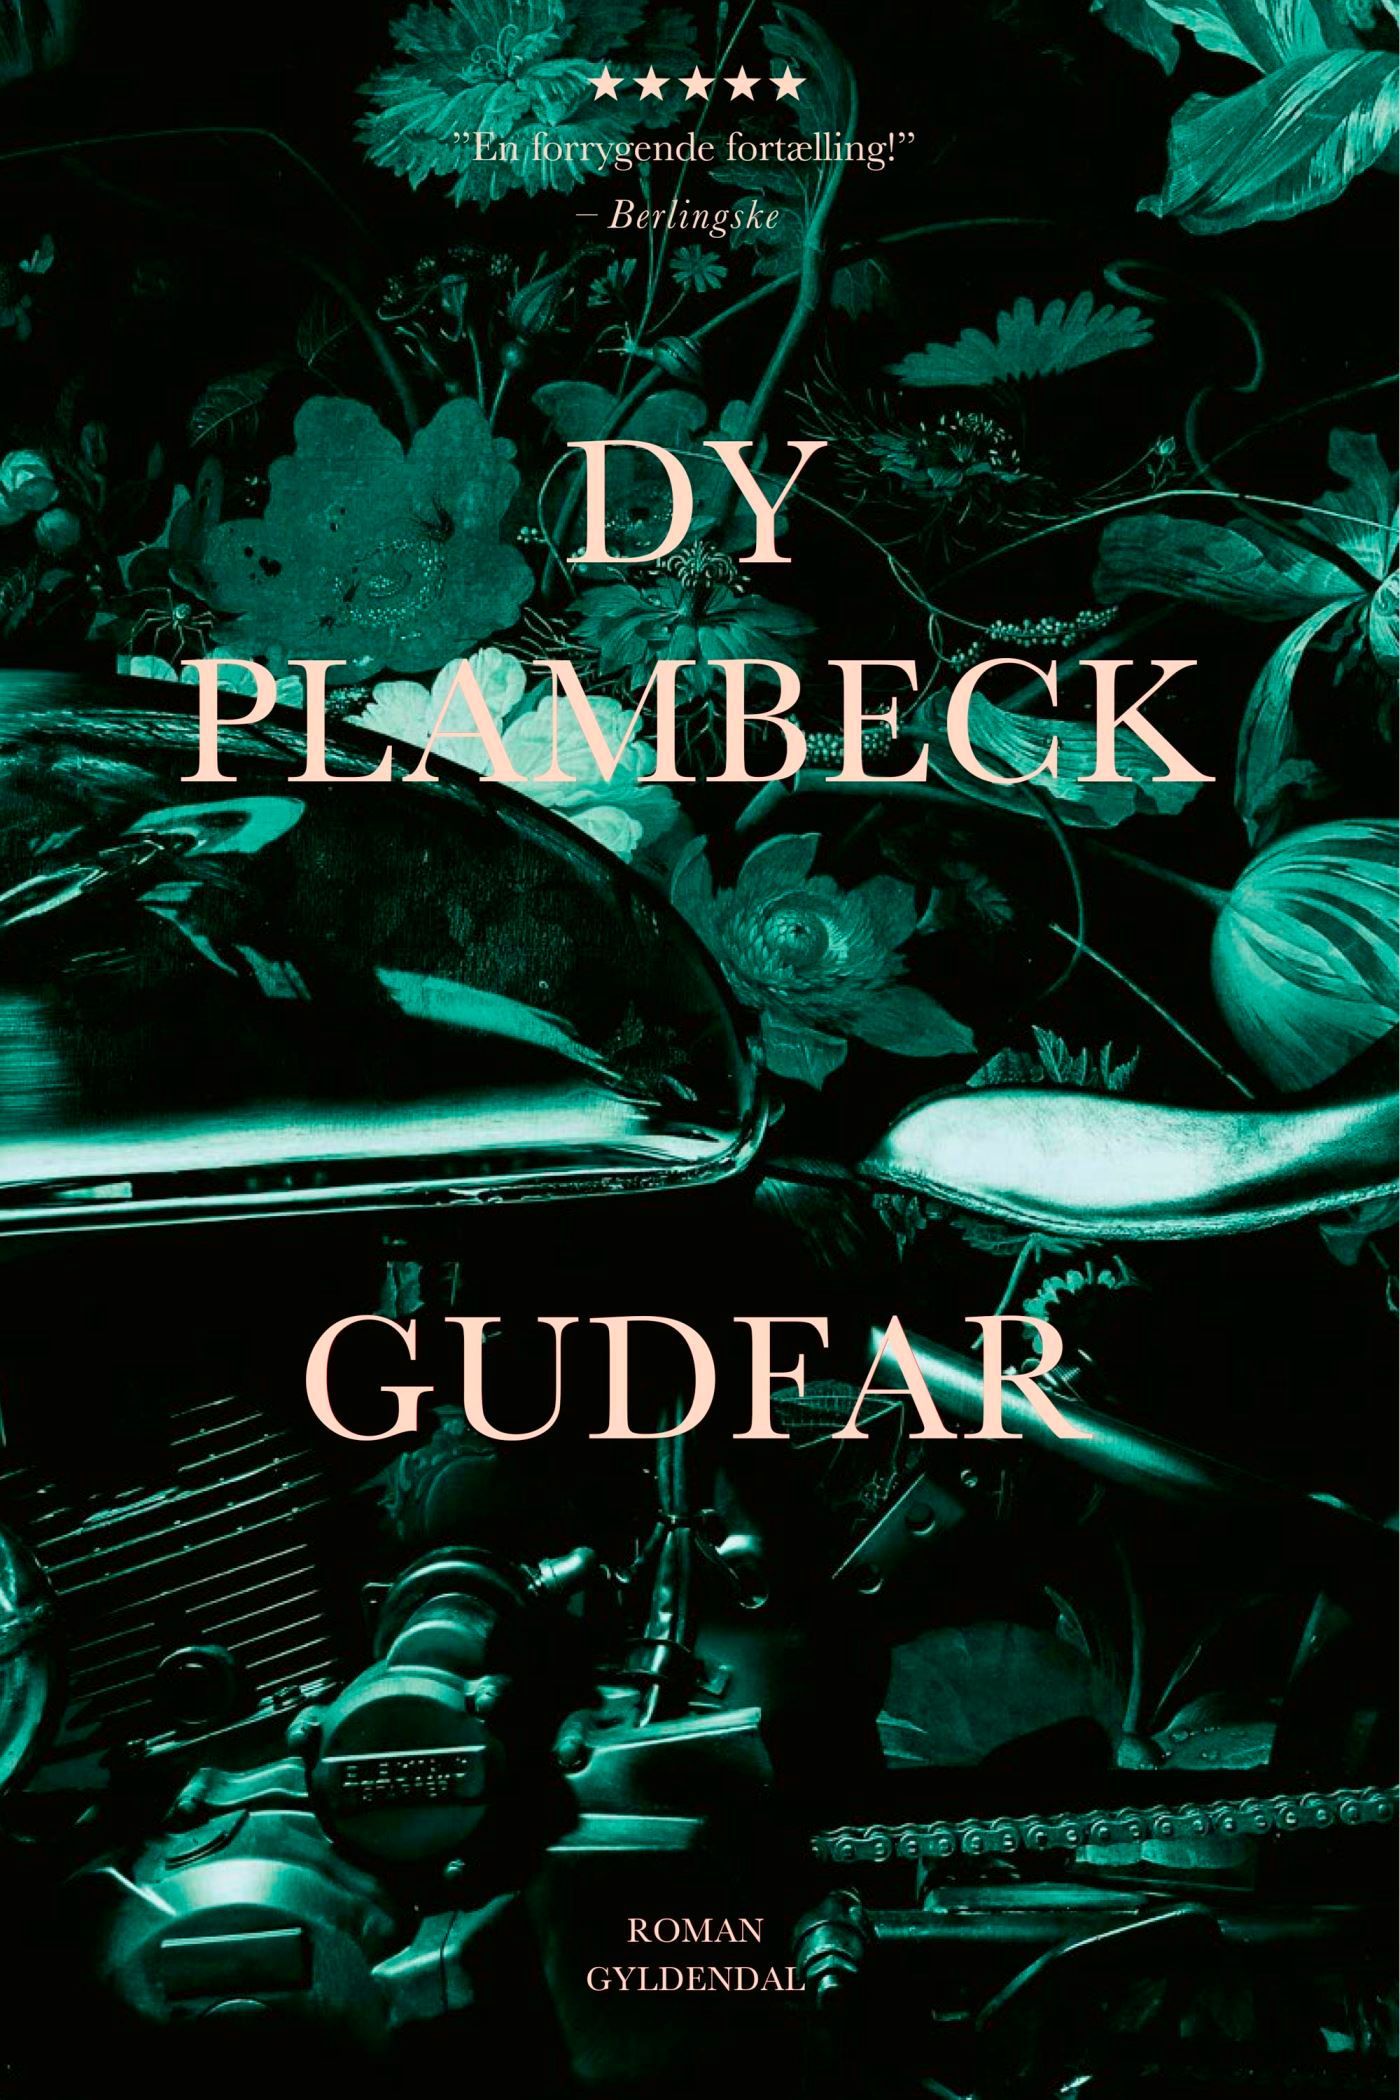 Gudfar, eBook by Dy Plambeck